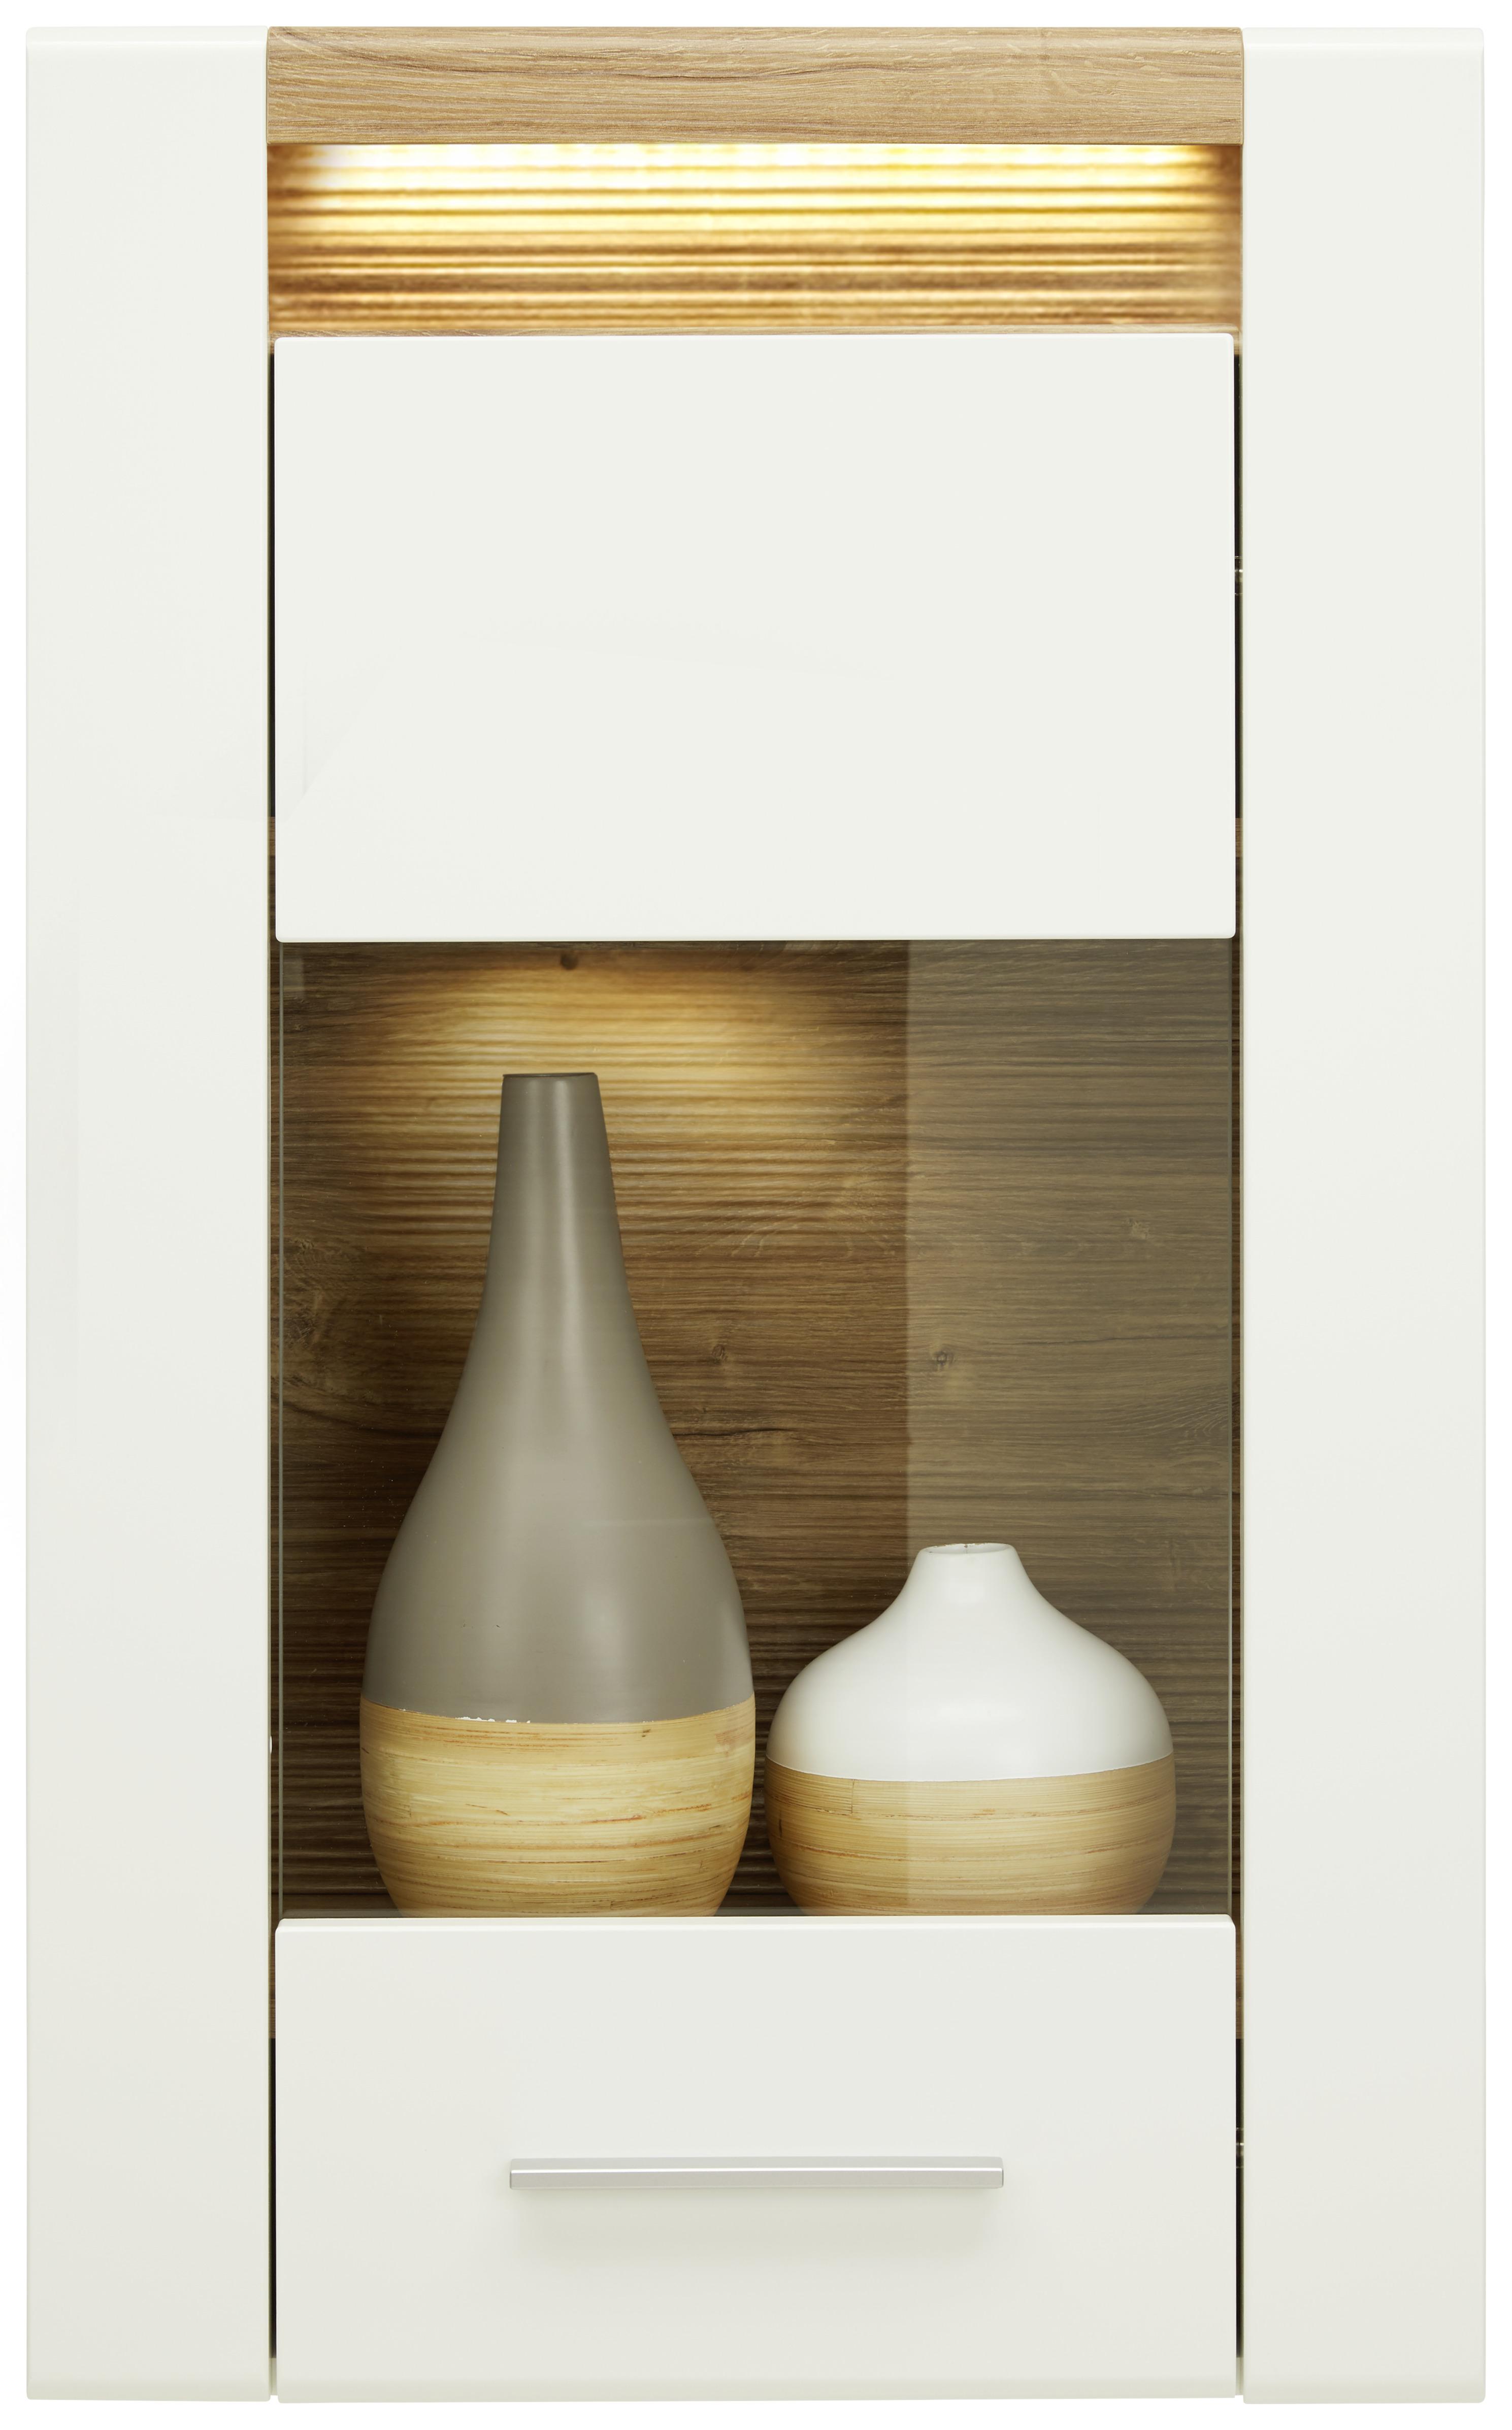 Závesná Vitrína Leonardo - farby dubu/biela, Moderný, kov/kompozitné drevo (60/98,5/30cm) - Modern Living